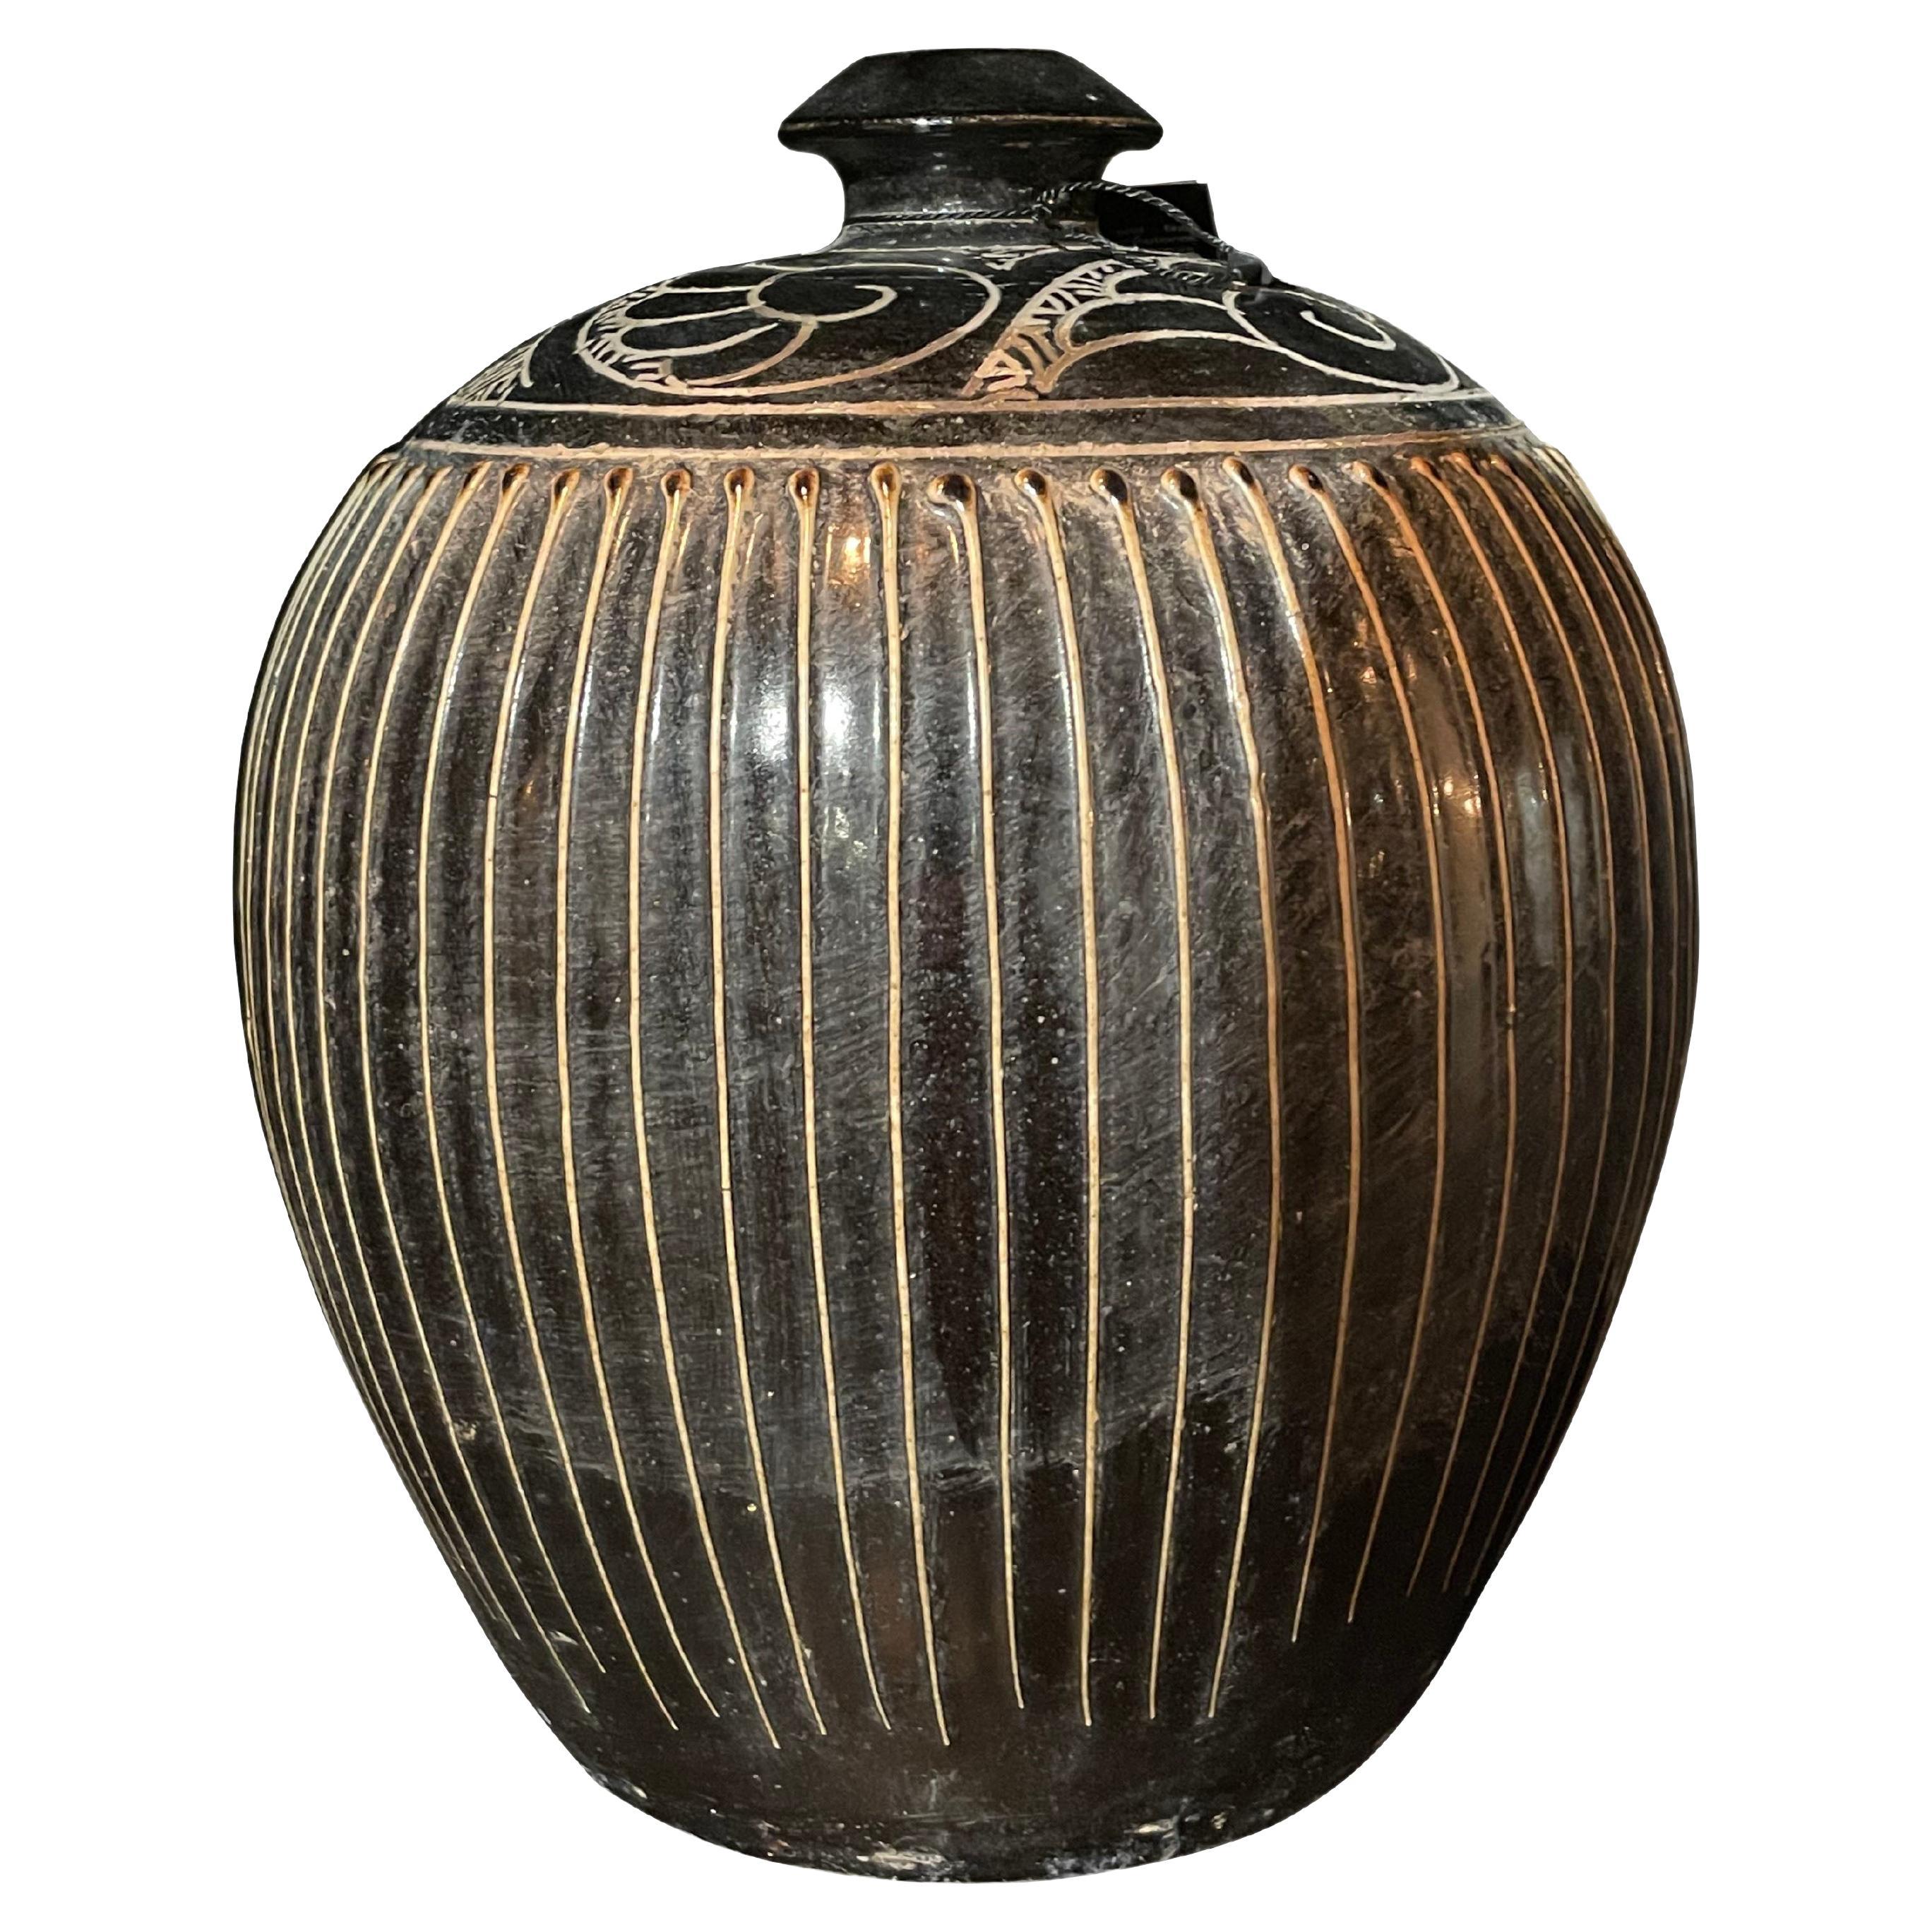 Vase aus Gold mit schwarzen Streifen, China, zeitgenössisch